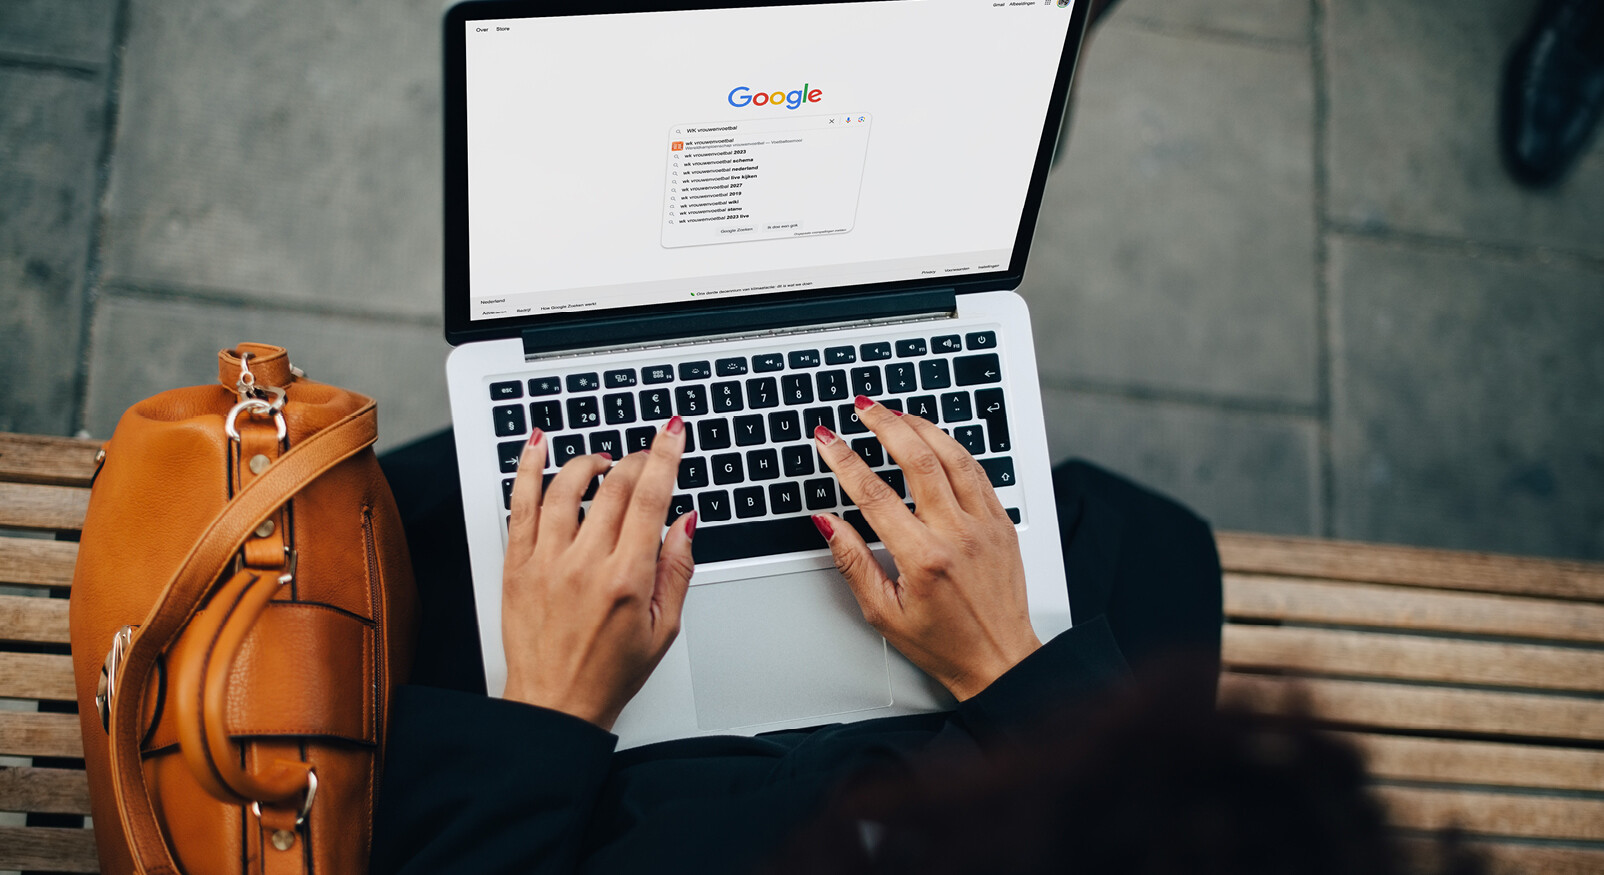 vrouw achter laptop google opdracht zoeken buiten bontjas